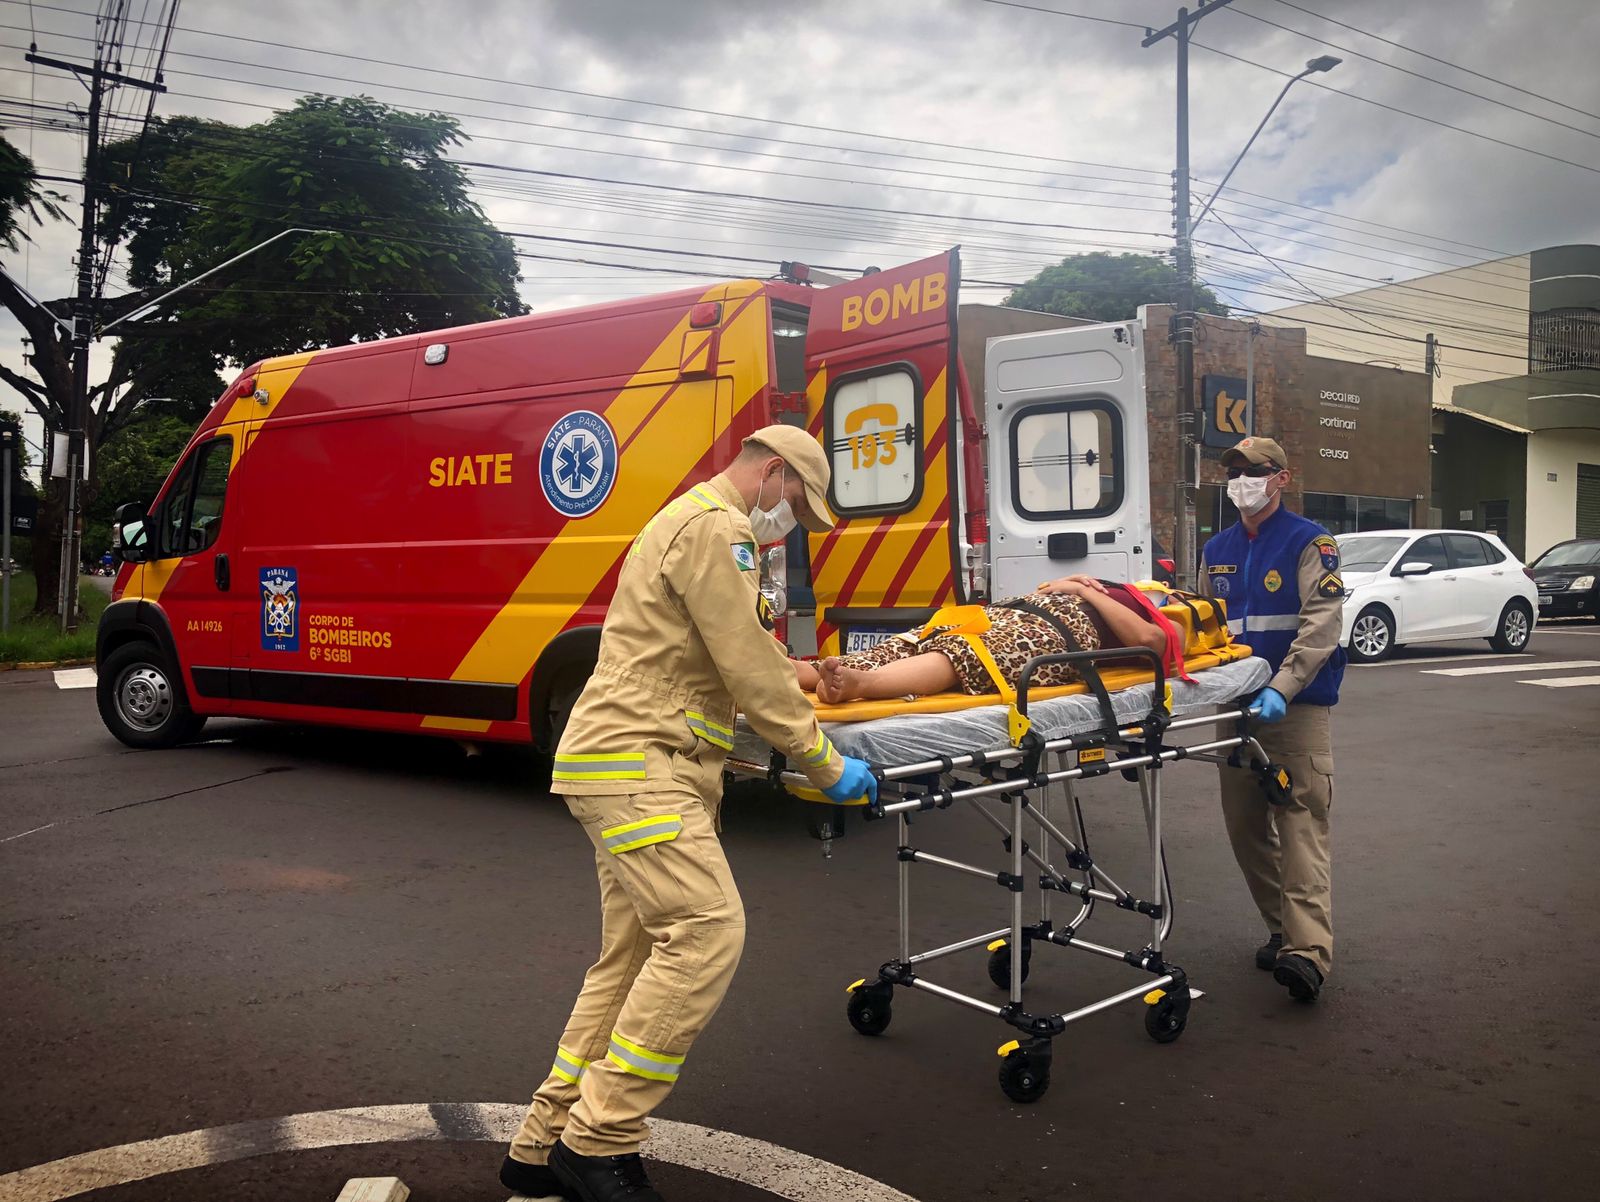 Jornal Ilustrado - Motociclista fica ferida após ser atingida por carro da Secretaria de Saúde de Brasilândia do Sul